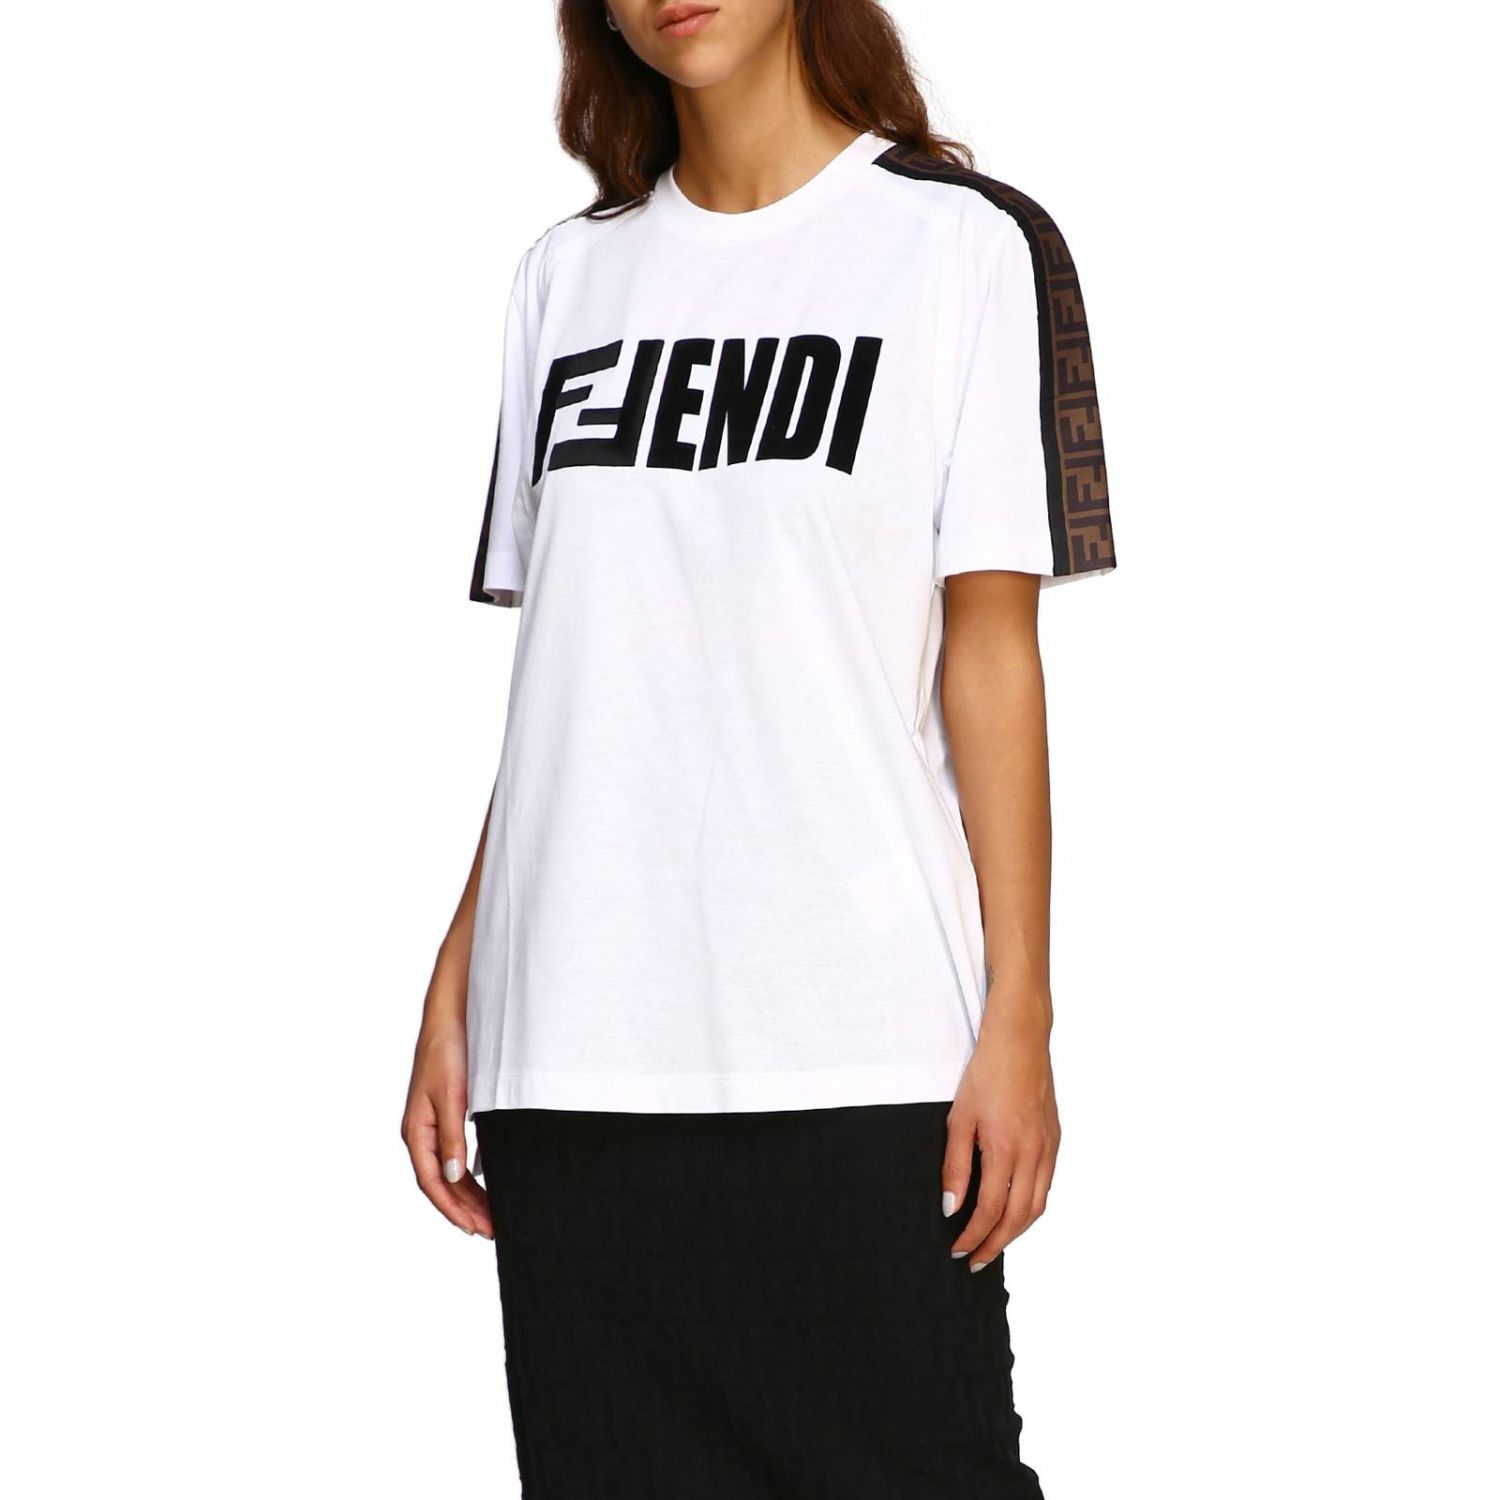 FENDI: T-shirt women | T-Shirt Fendi Women White | T-Shirt Fendi FS7088 ...